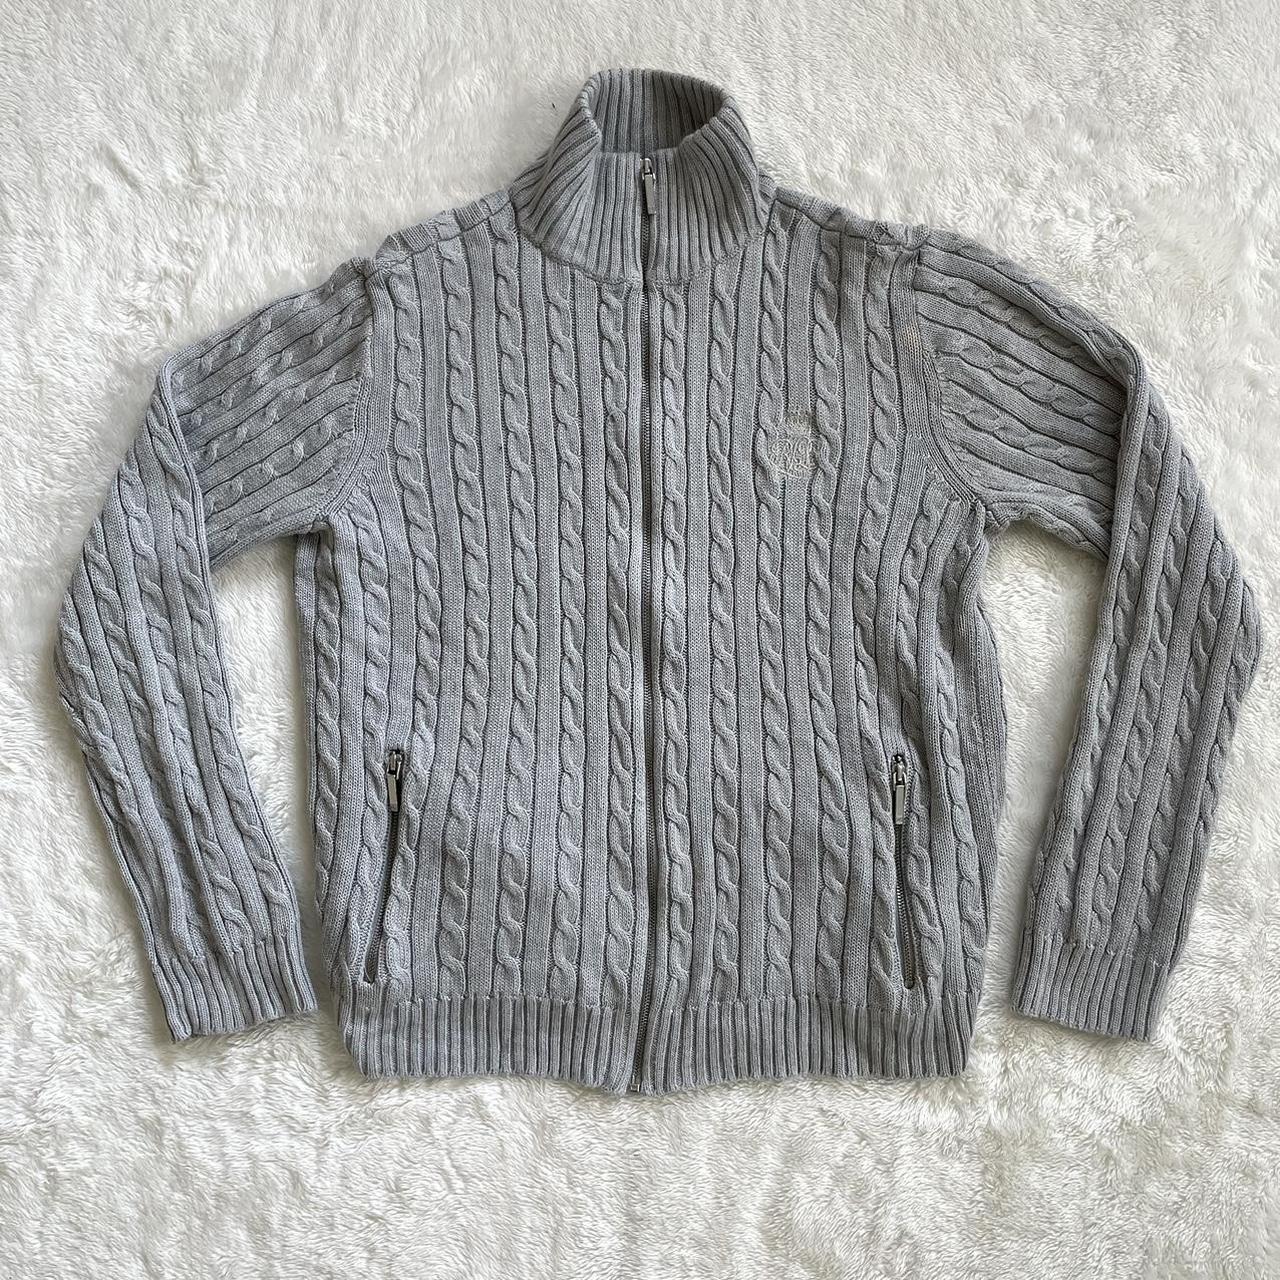 Lauren Ralph Lauren Cable Knit Zip Up Sweater Jacket... - Depop